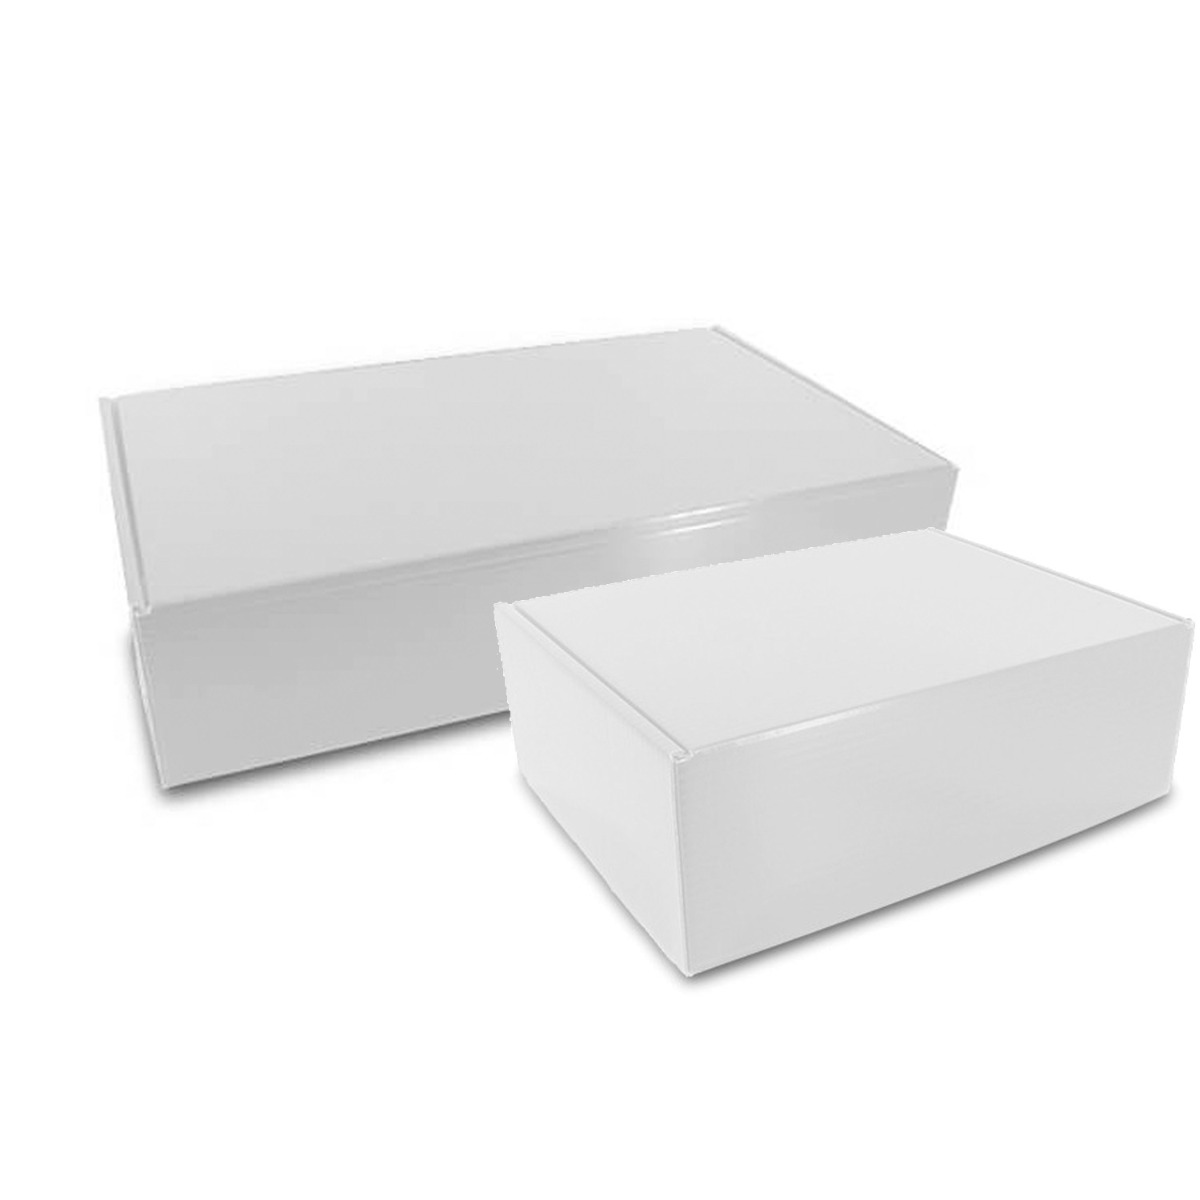 Luxus-Boxen für Lebensmittel 38x30x14cm Weiß - 25 Stück